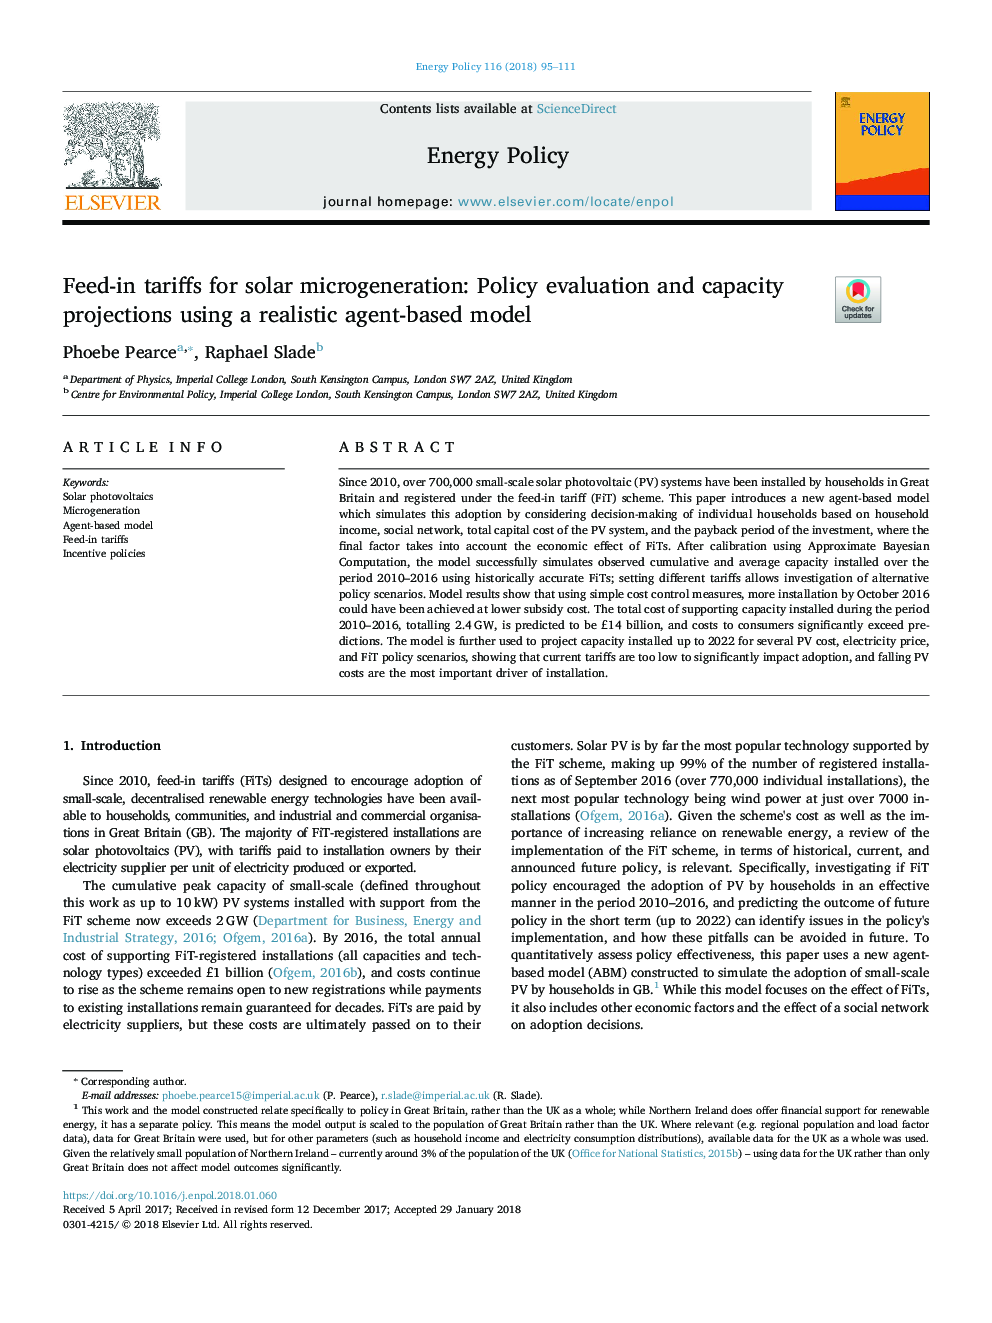 تعرفه های خوراک برای میکروژنراتوری خورشیدی: ارزیابی سیاست و پیش بینی ظرفیت با استفاده از یک مدل مبتنی بر عامل واقع گرایانه 